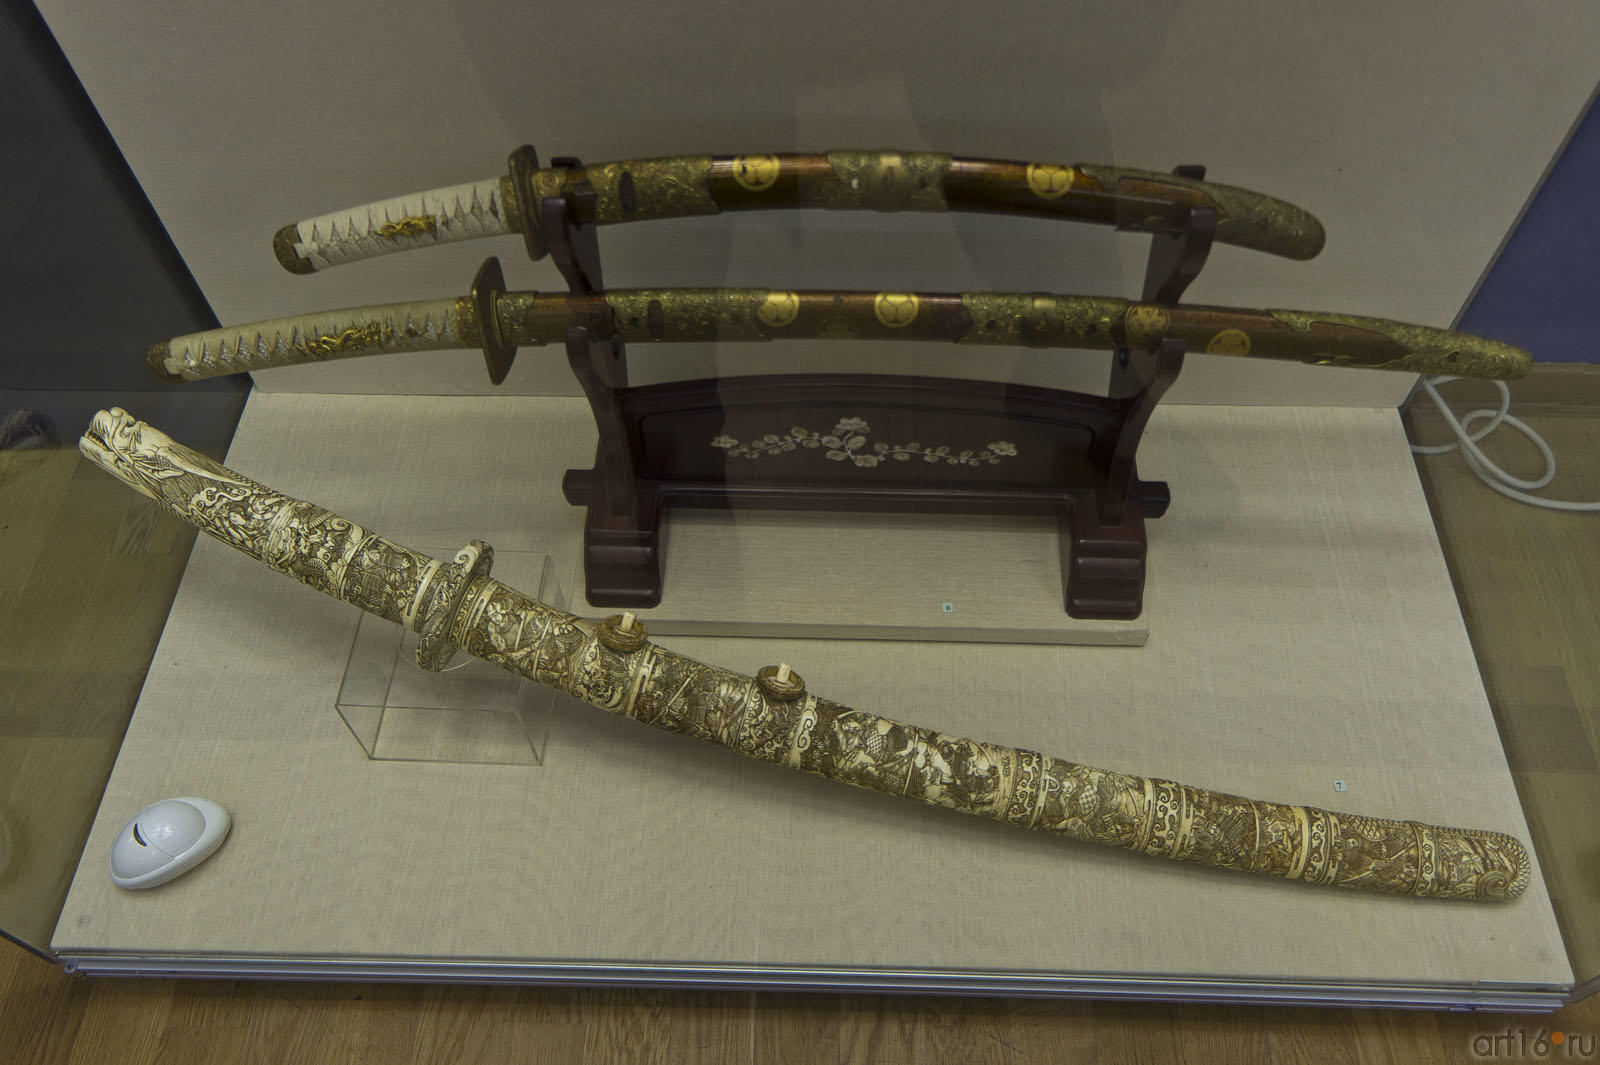 Кинжалы танто, Япония 19в.::Художественное оружие из собрания Государственного Эрмитажа